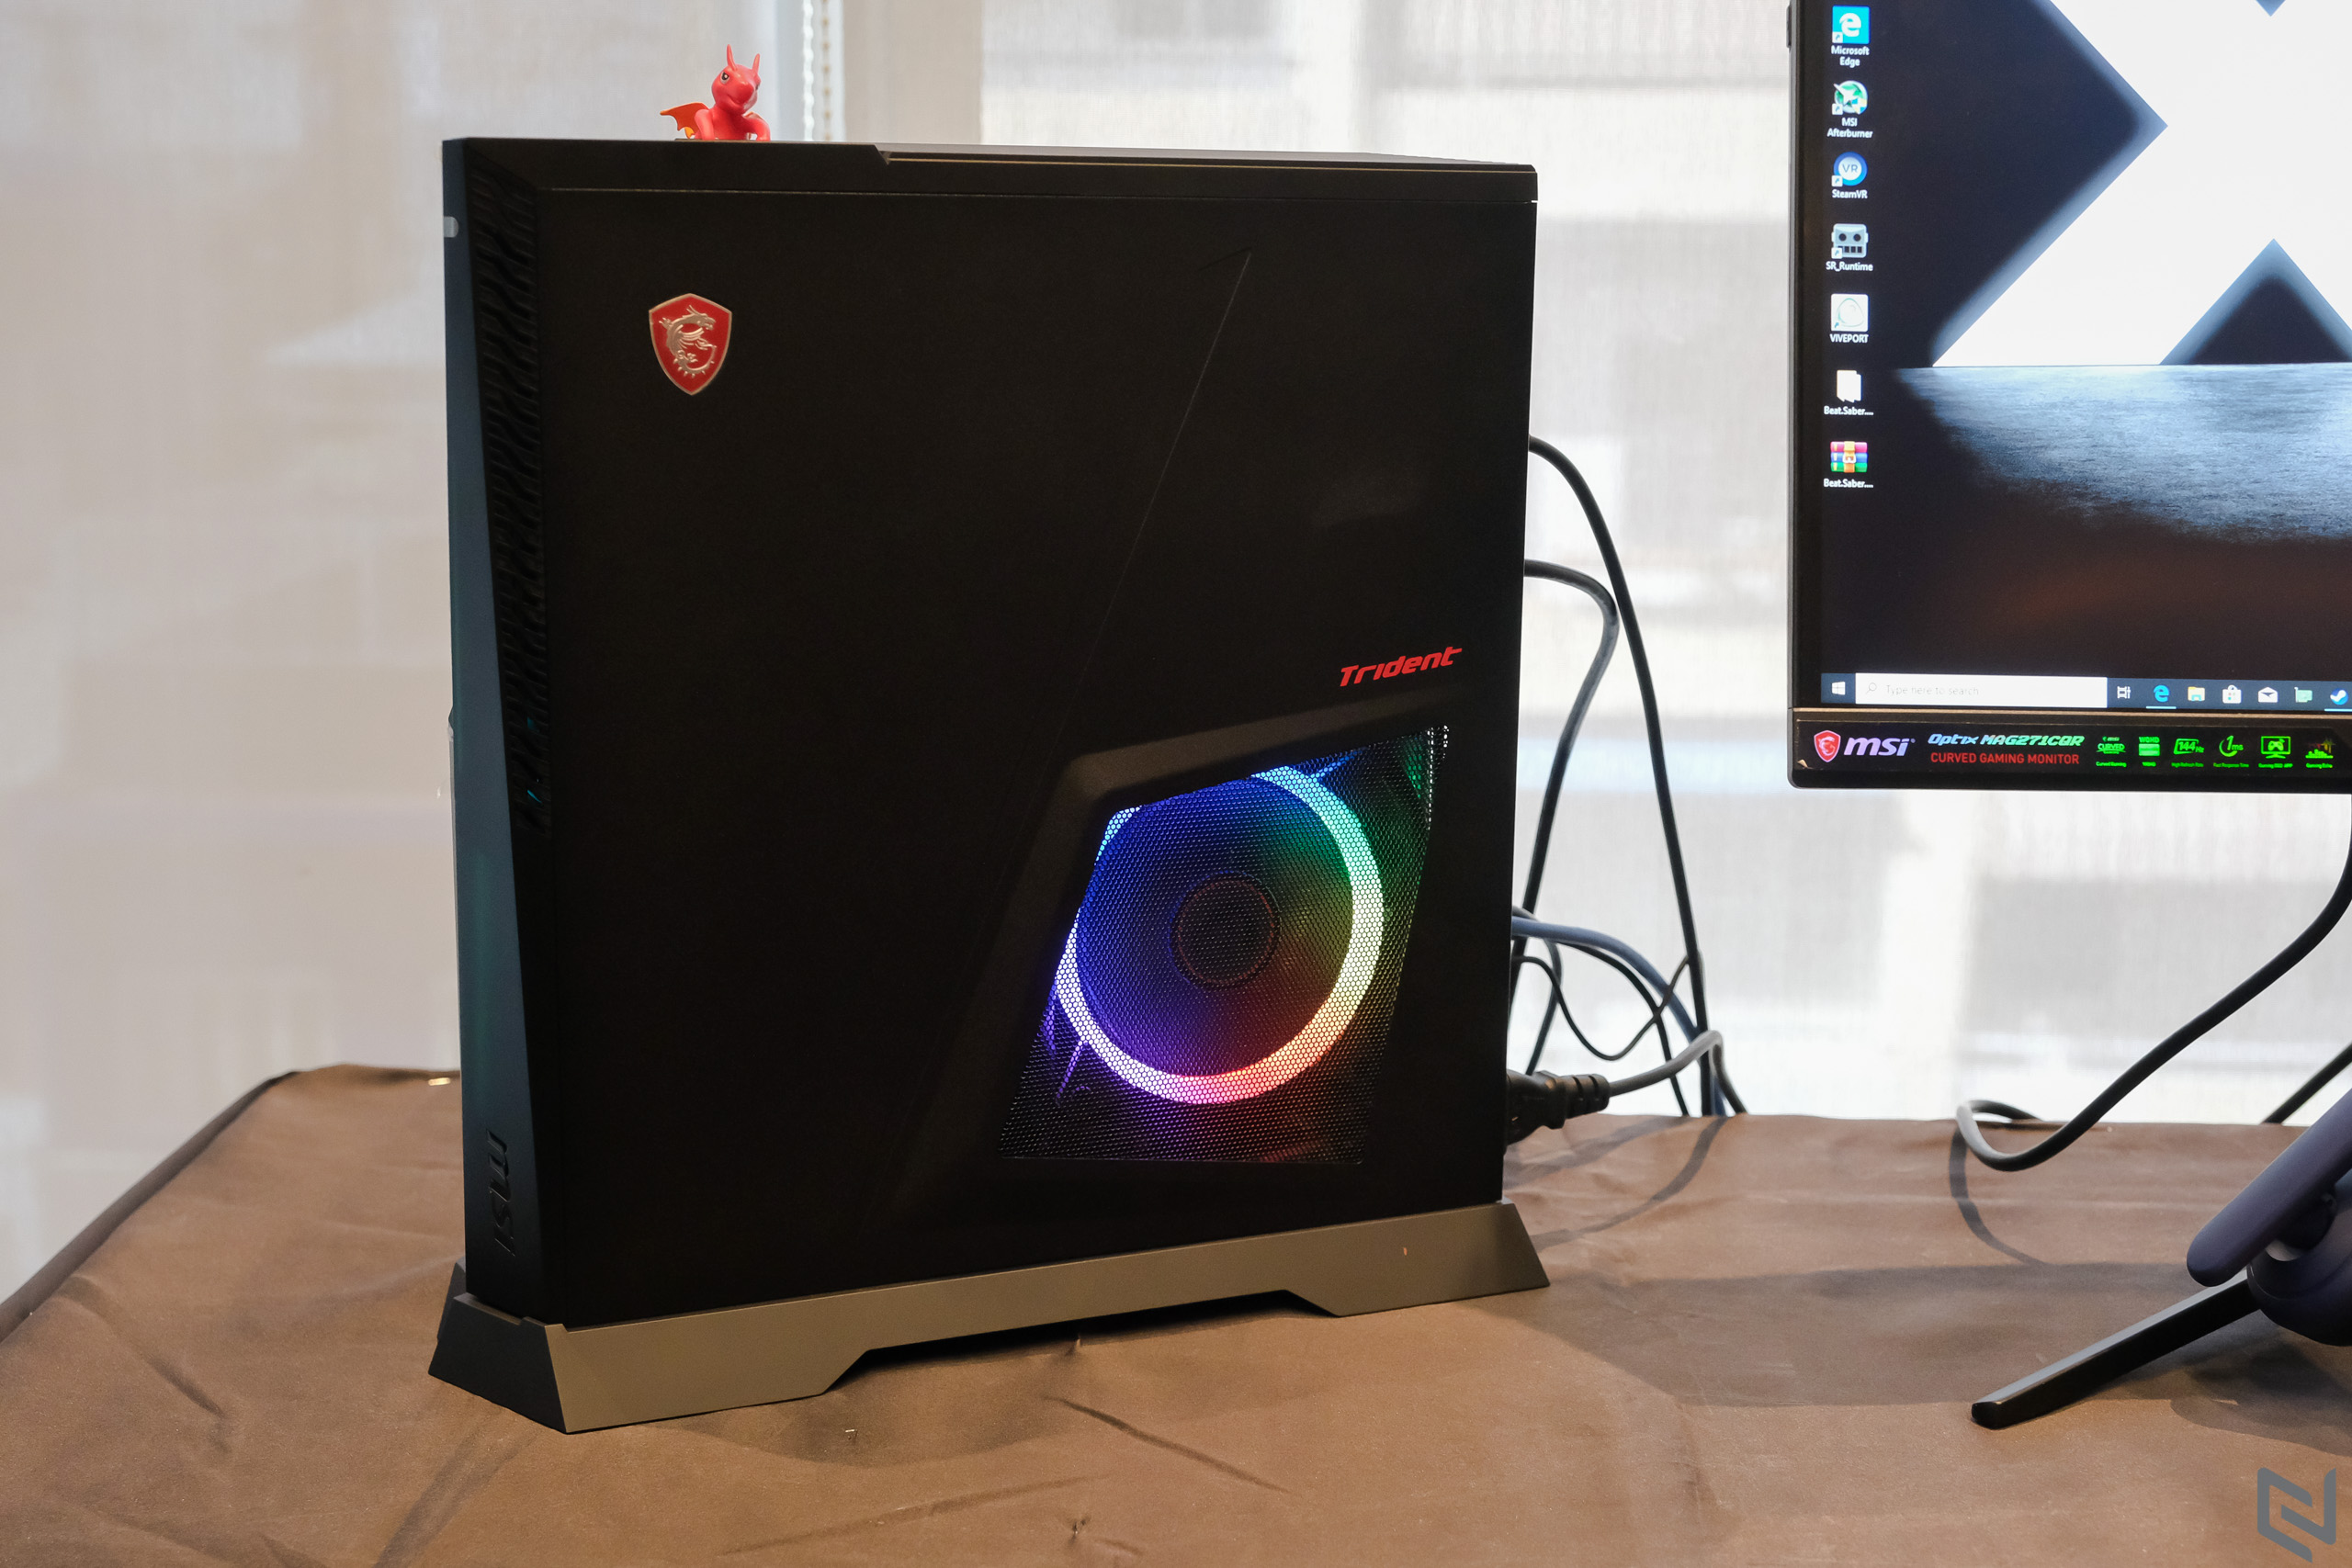 MSI ra mắt dải gaming desktop Trident cho game thủ và Mini PC Cubi cho doanh nghiệp